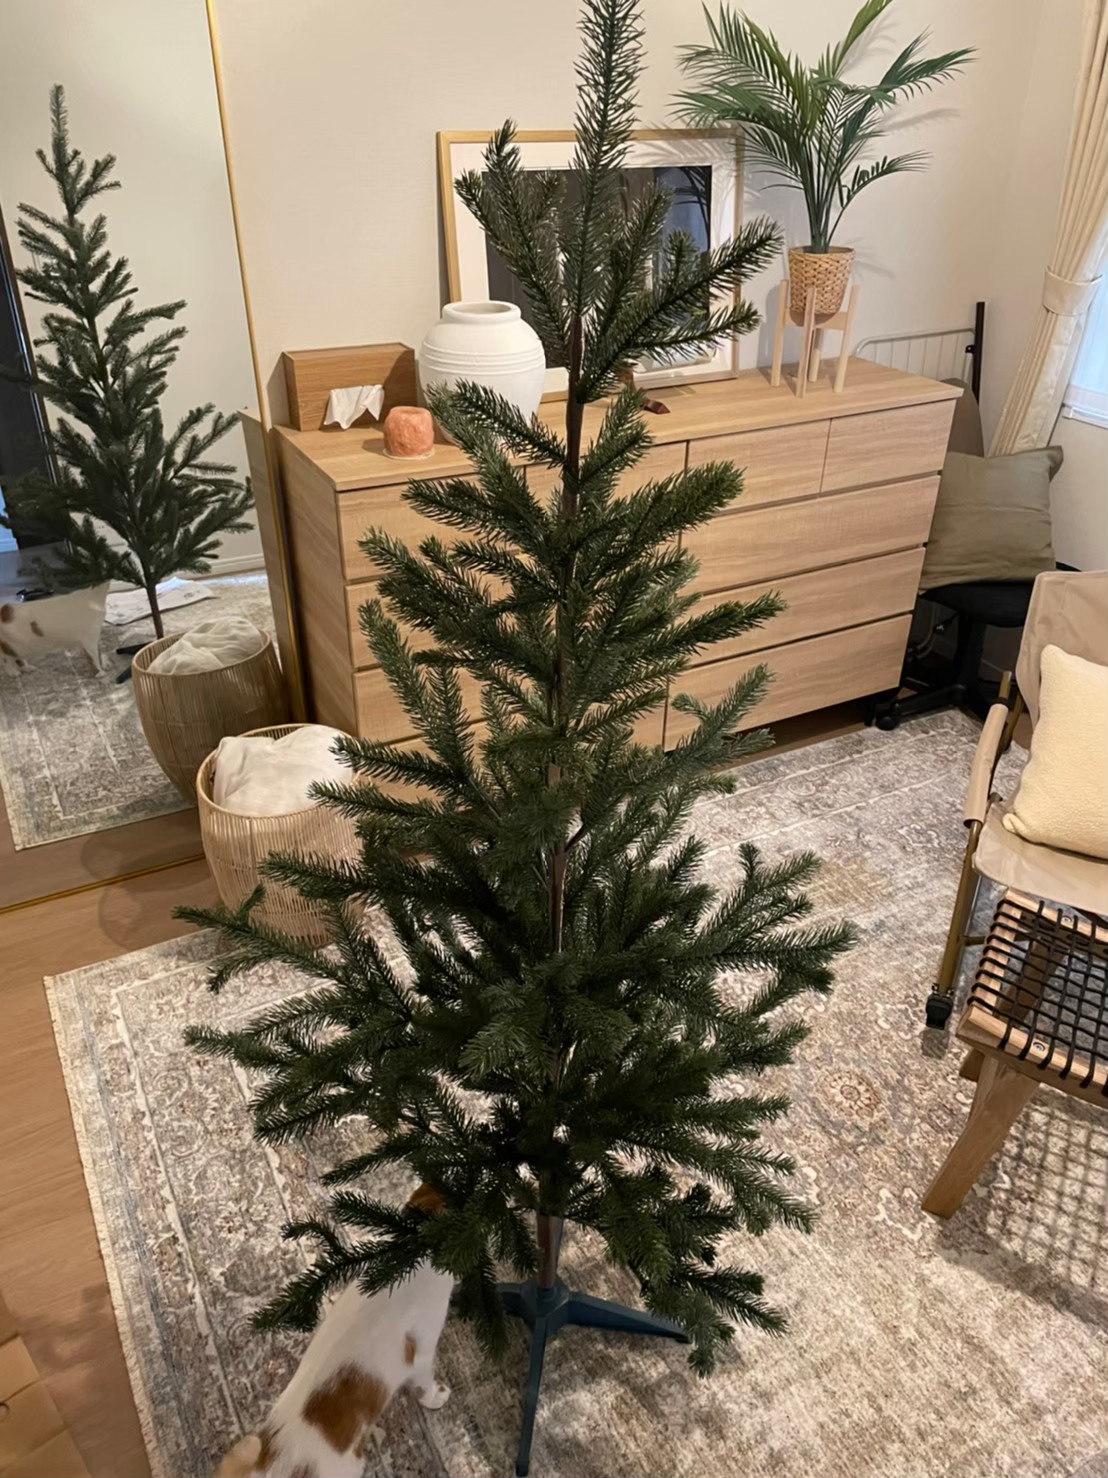 IKEAの大人気クリスマスツリー、実例・感想ぶっちゃけます。値上げも 